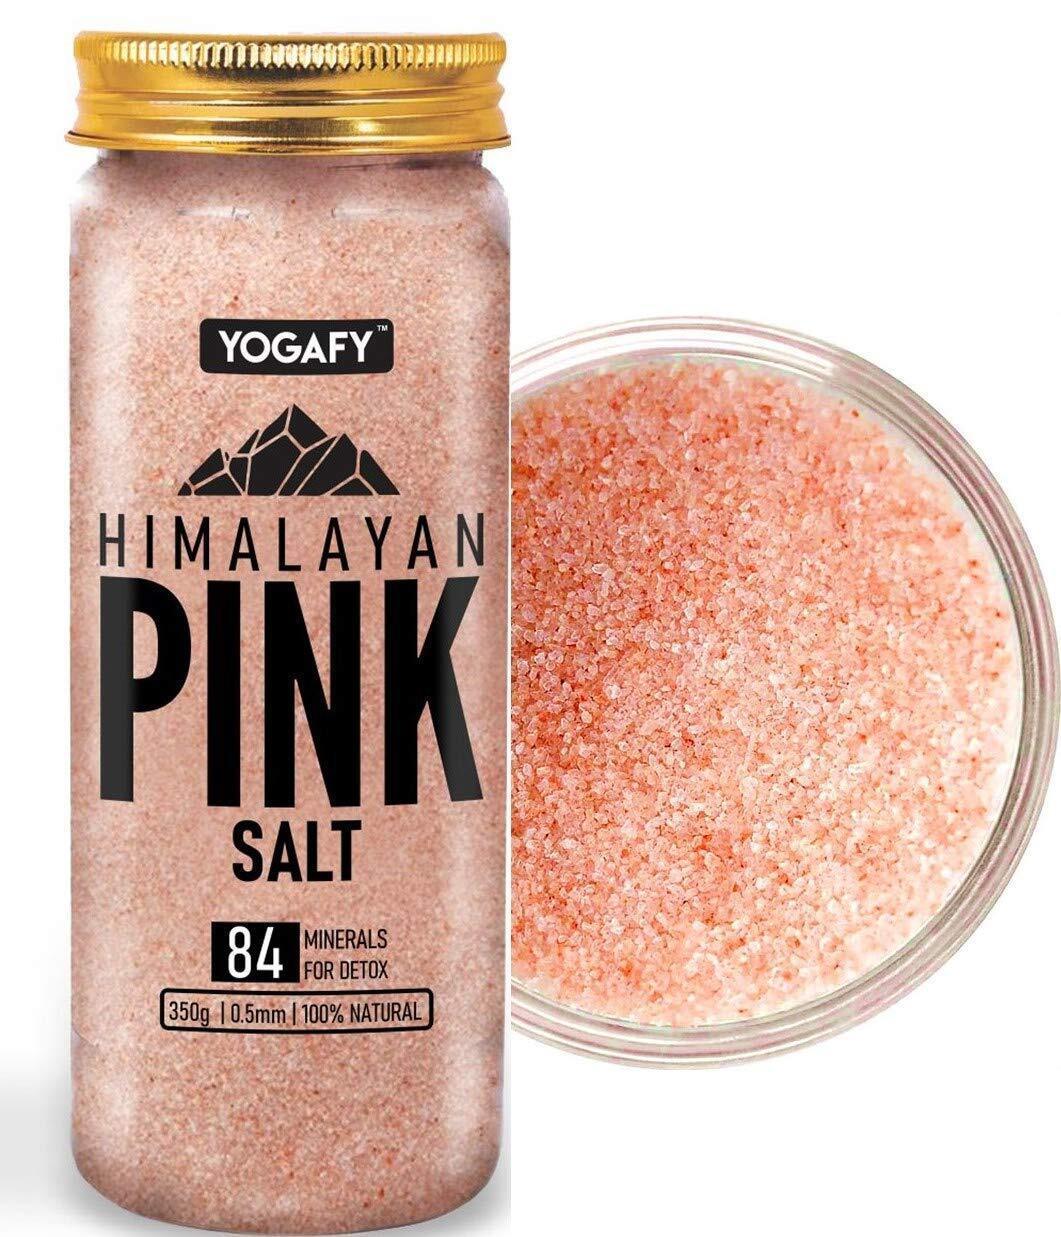 Himalayan Pink Salt - (350 gm) Salt Packed with 84 Minerals Food Grade Pet Jar . - $29.69